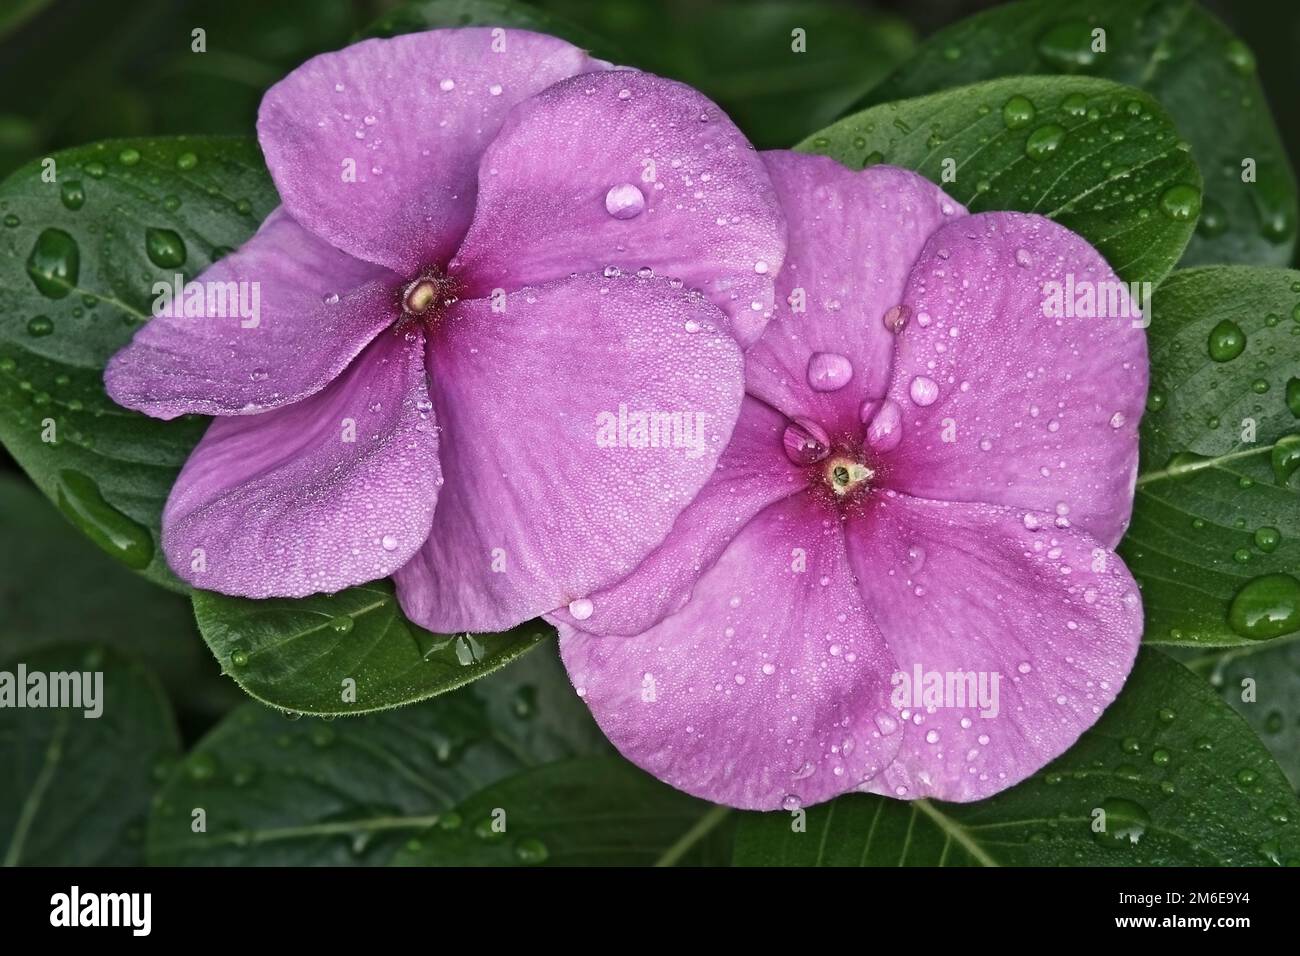 Close-up image of Madagascar periwinkle flowers Stock Photo